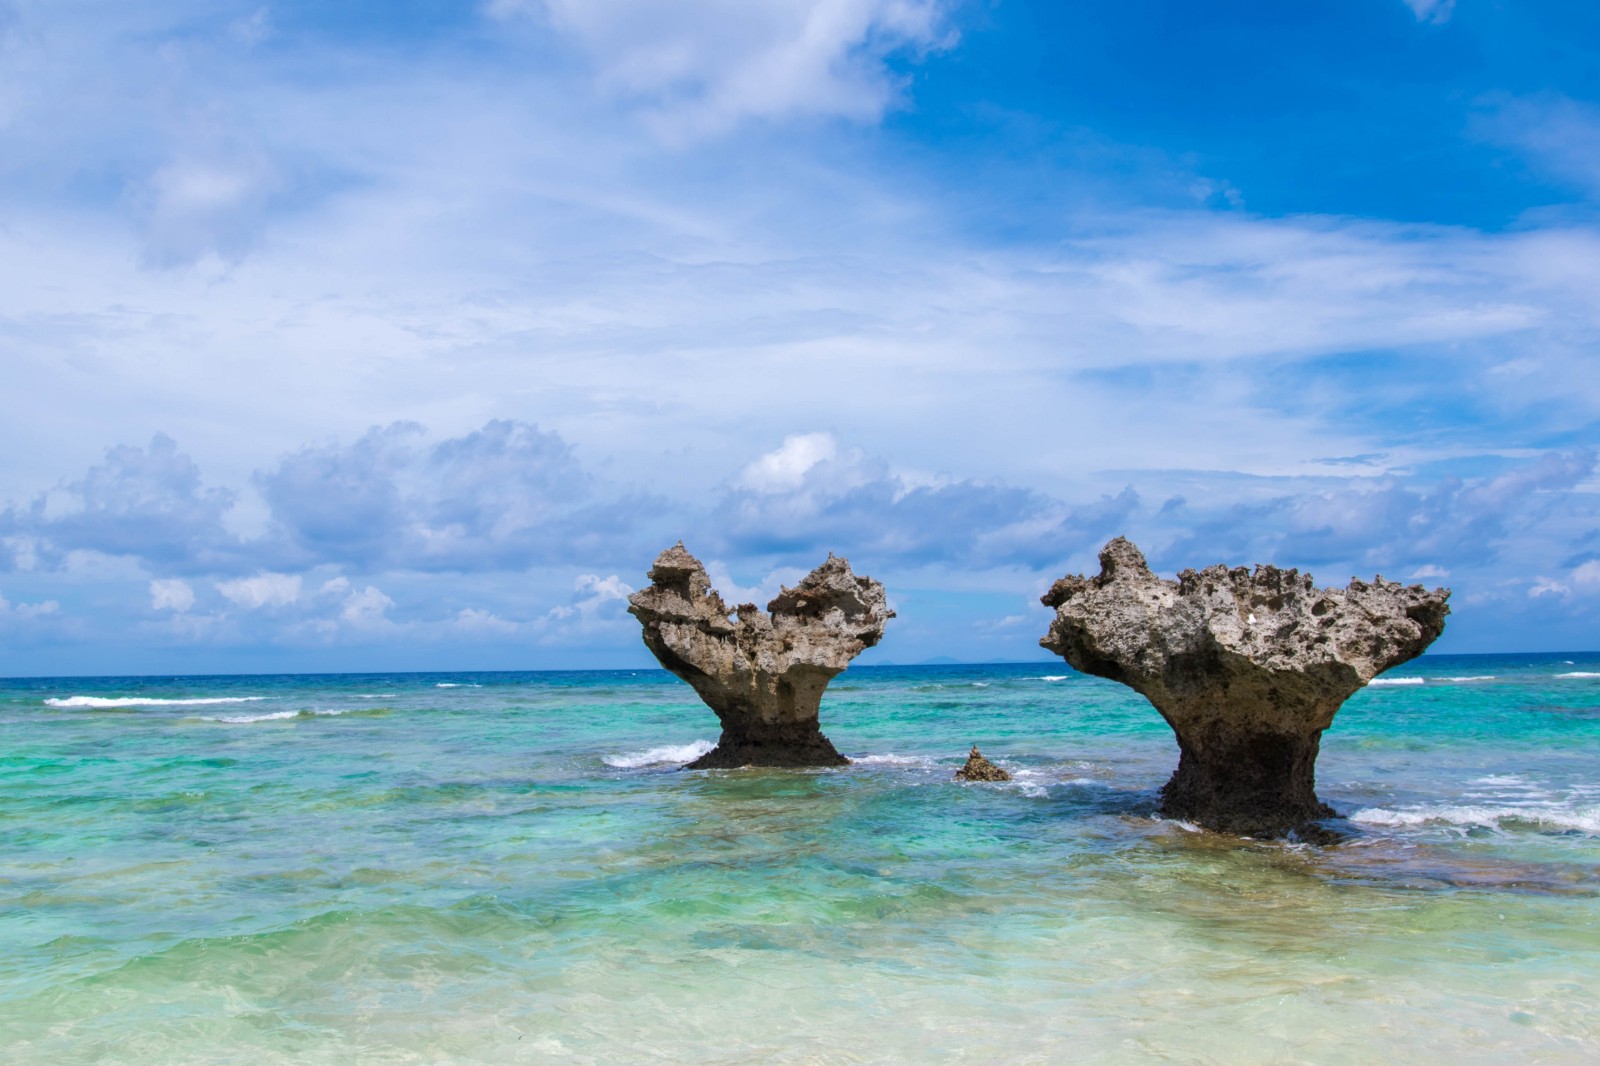 10 Best Beaches on Okinawa Main Island